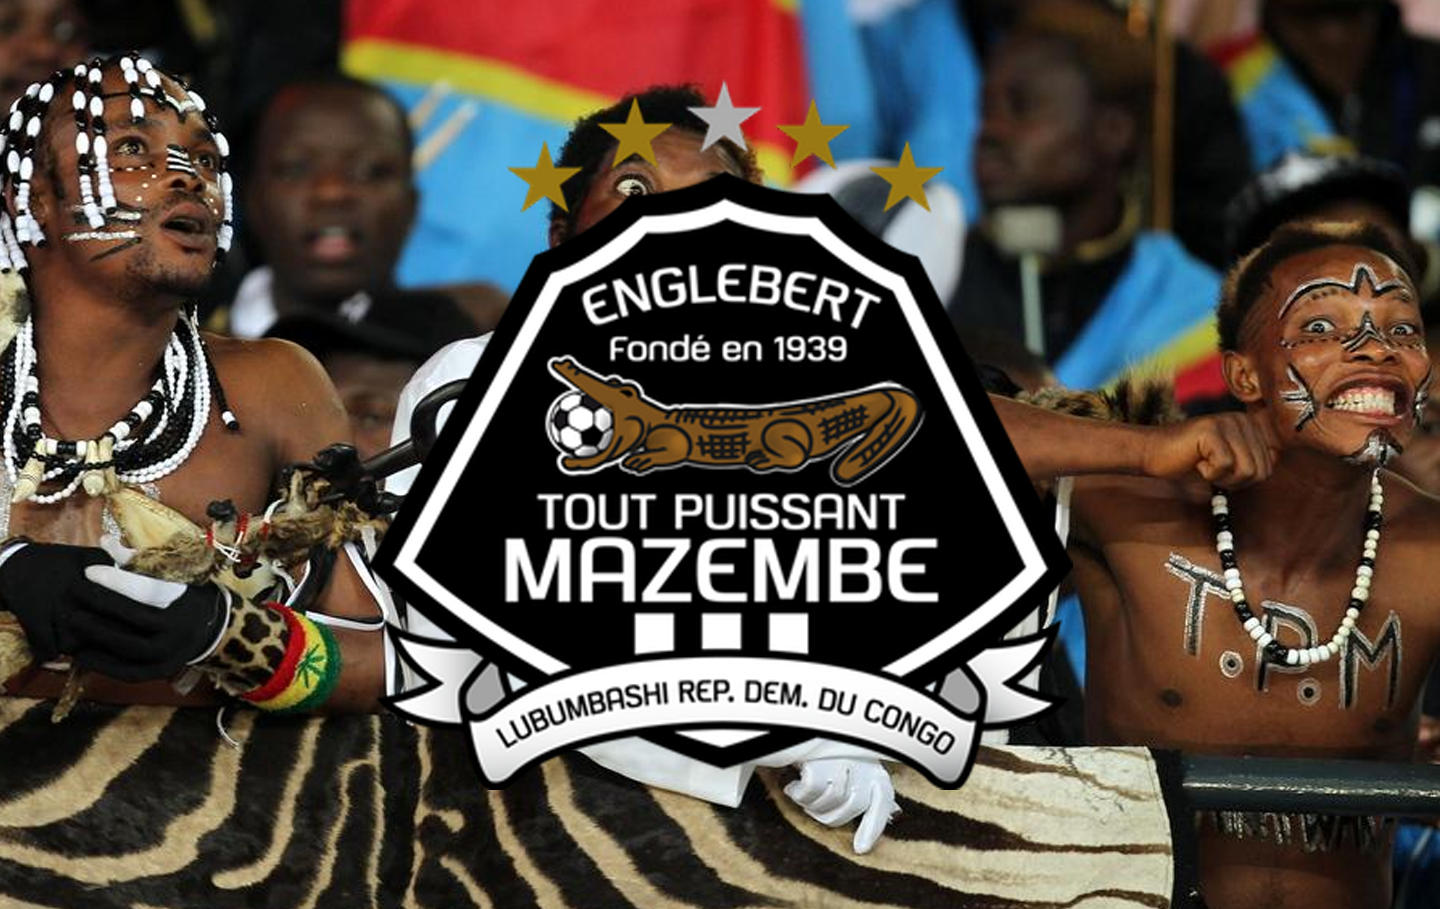 Affaire Malango: TP Mazembe réagit à son tour